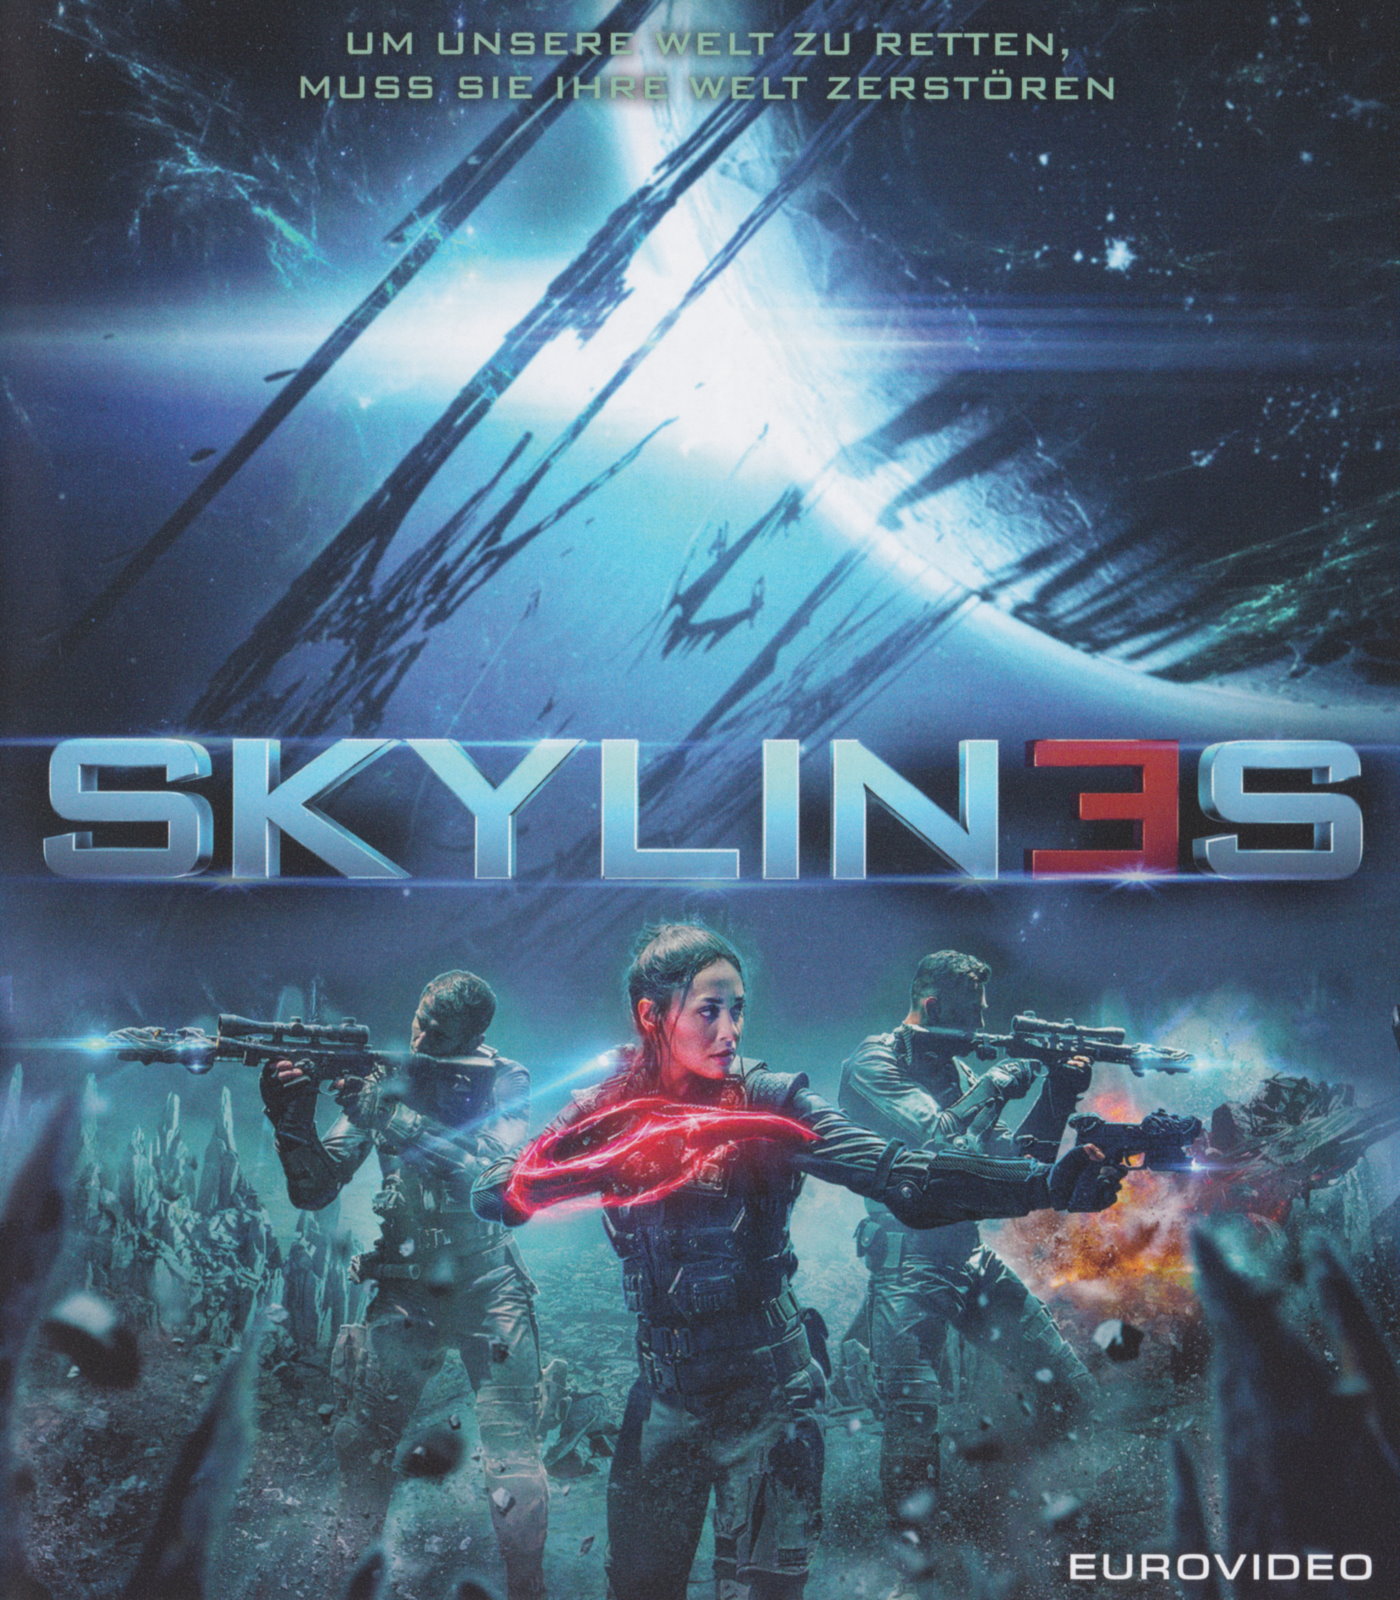 Cover - Skylin3s.jpg